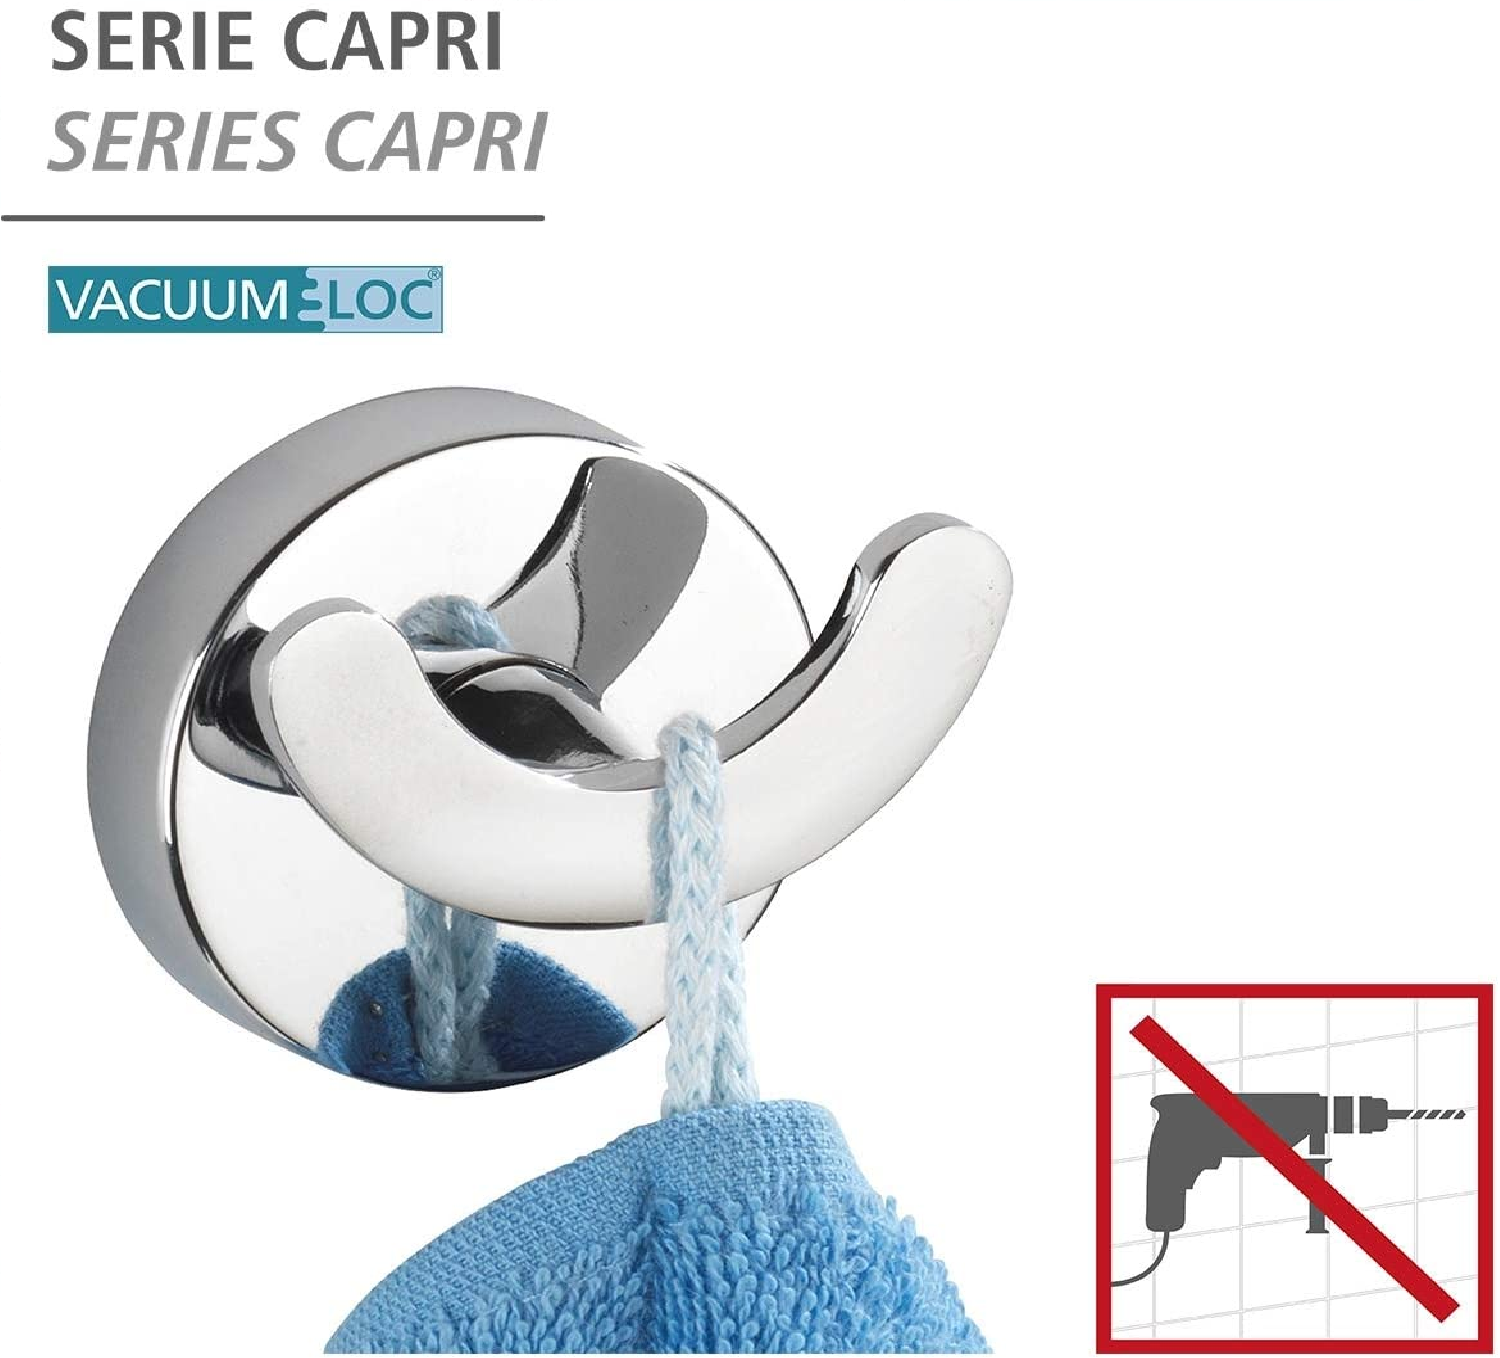 Vacuum-Loc® Wandhaken Duo Capri - Befestigen ohne bohren, Zinkdruckguss, 6.5 x 6 x 4 cm, Chrom